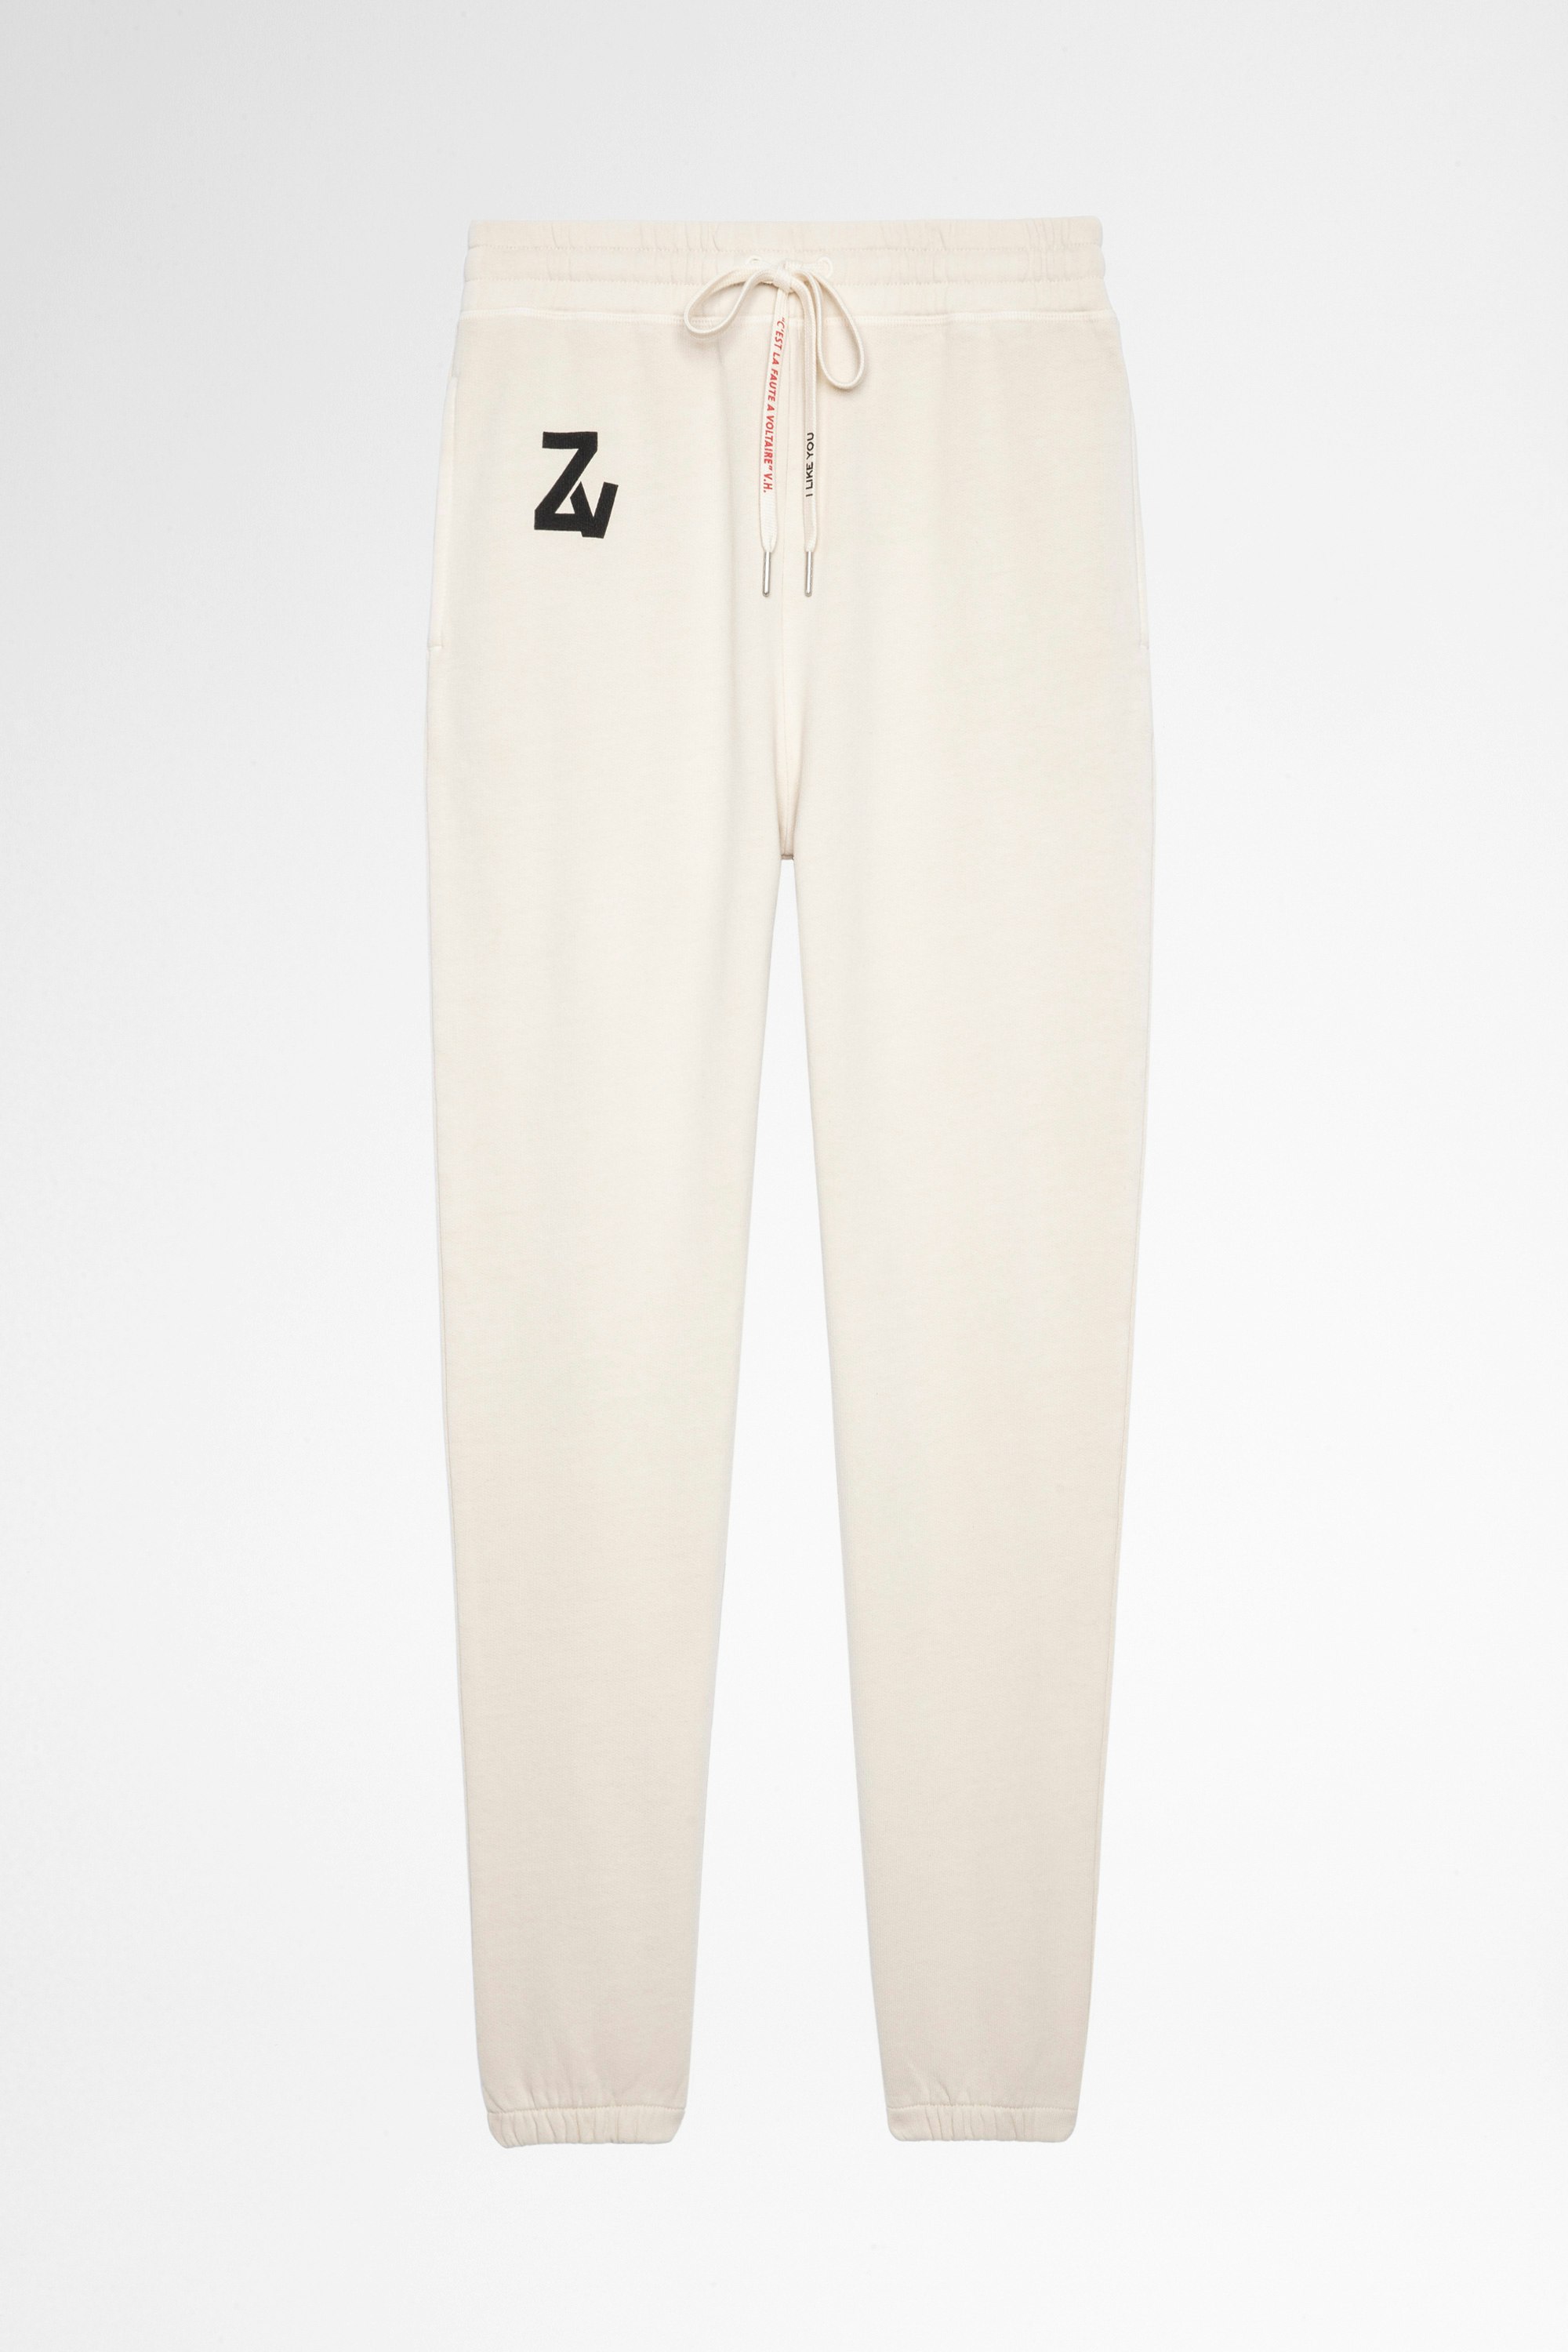 Pantalón deportivo Steevy Pantalón deportivo de mujer de algodón beige. Este producto cuenta con la certificación GOTS y está confeccionado con fibras procedentes de la agricultura ecológica.